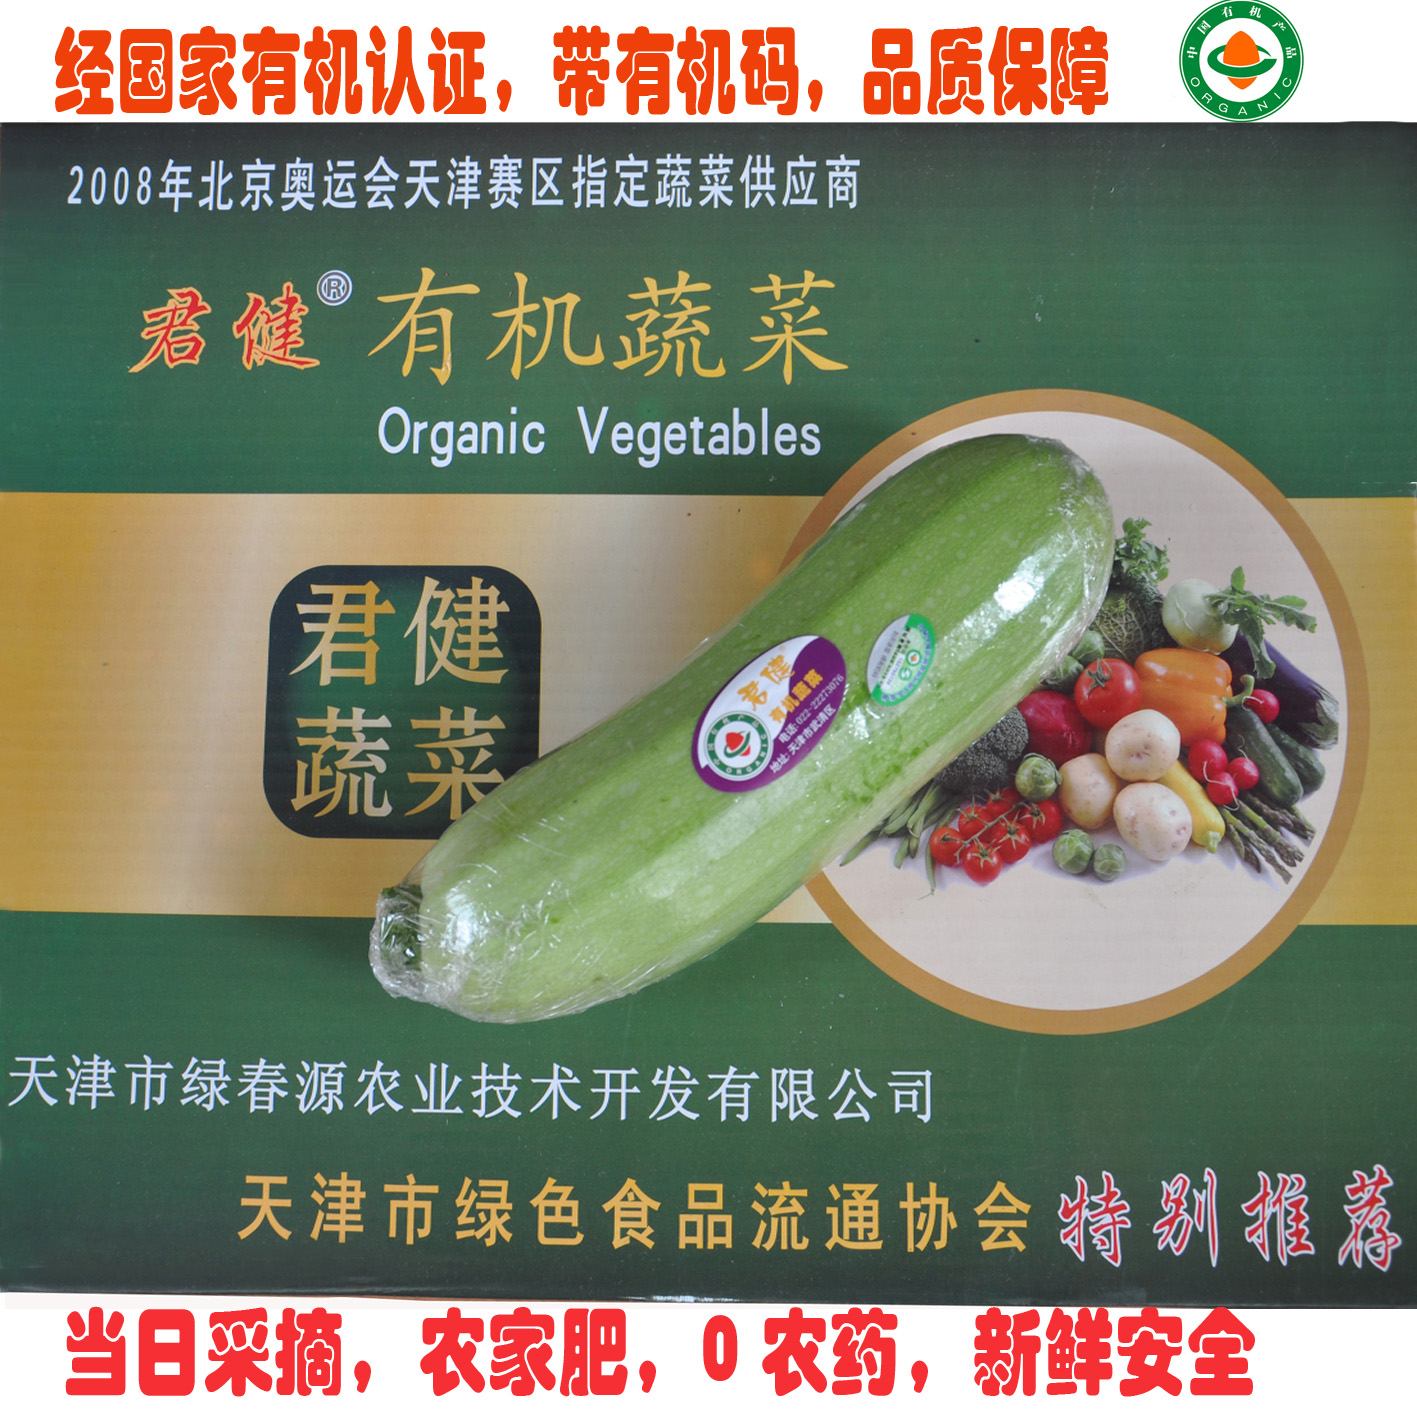 生鲜蔬菜 有机食品 西葫芦  有机蔬菜天津 同城配送 有机肥无农药